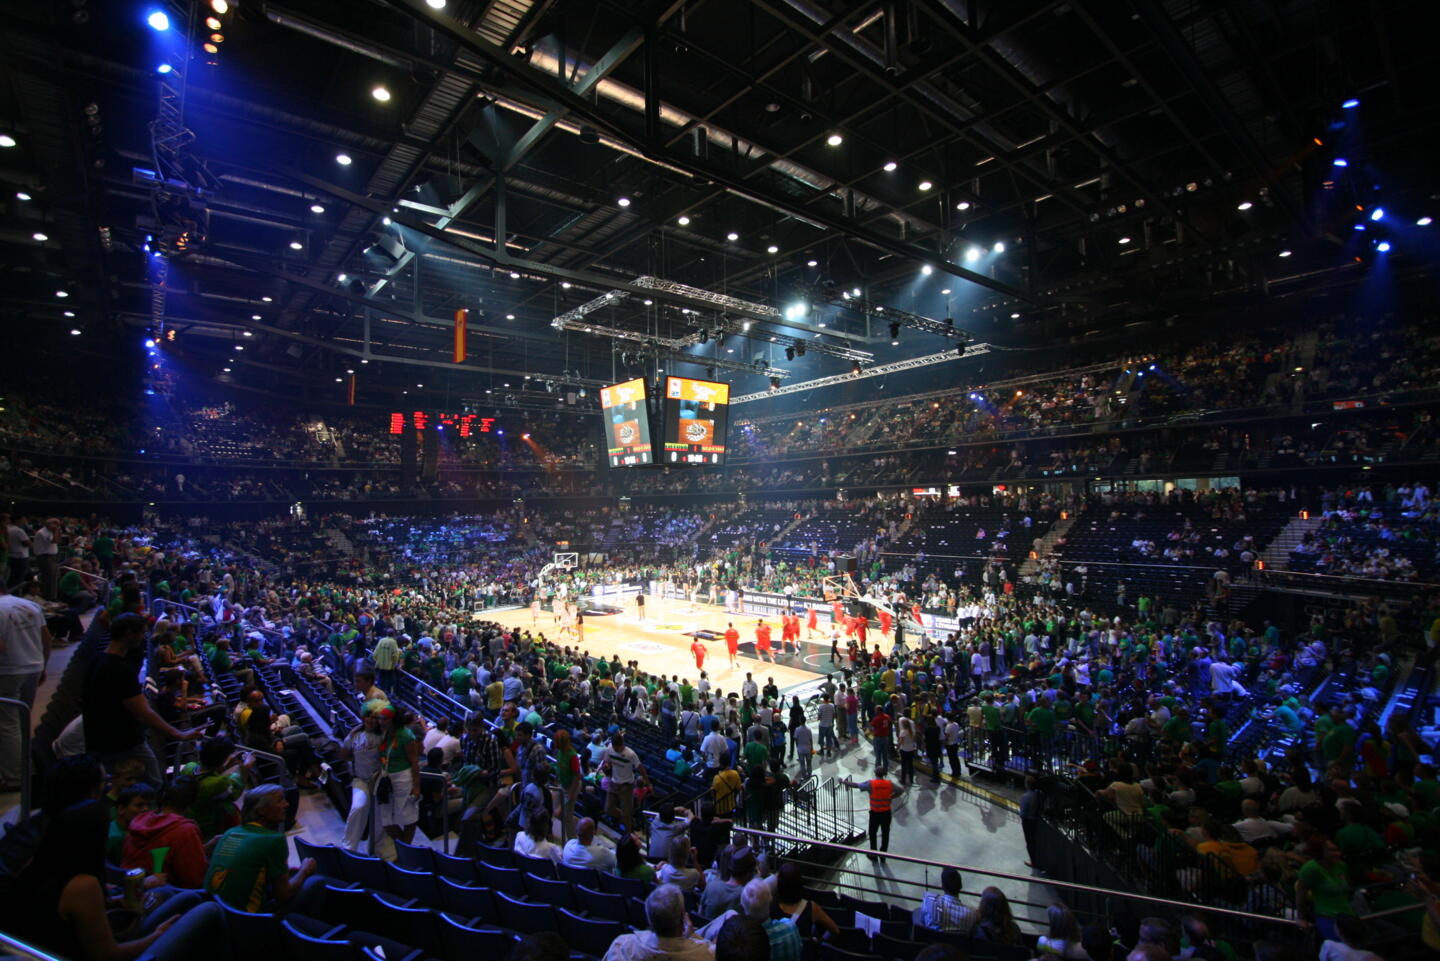 Vista interior de un pabellón deportivo abarrotado durante un partido de baloncesto, con los espectadores vestidos de verde y la acción en el centro, en el suelo iluminado.